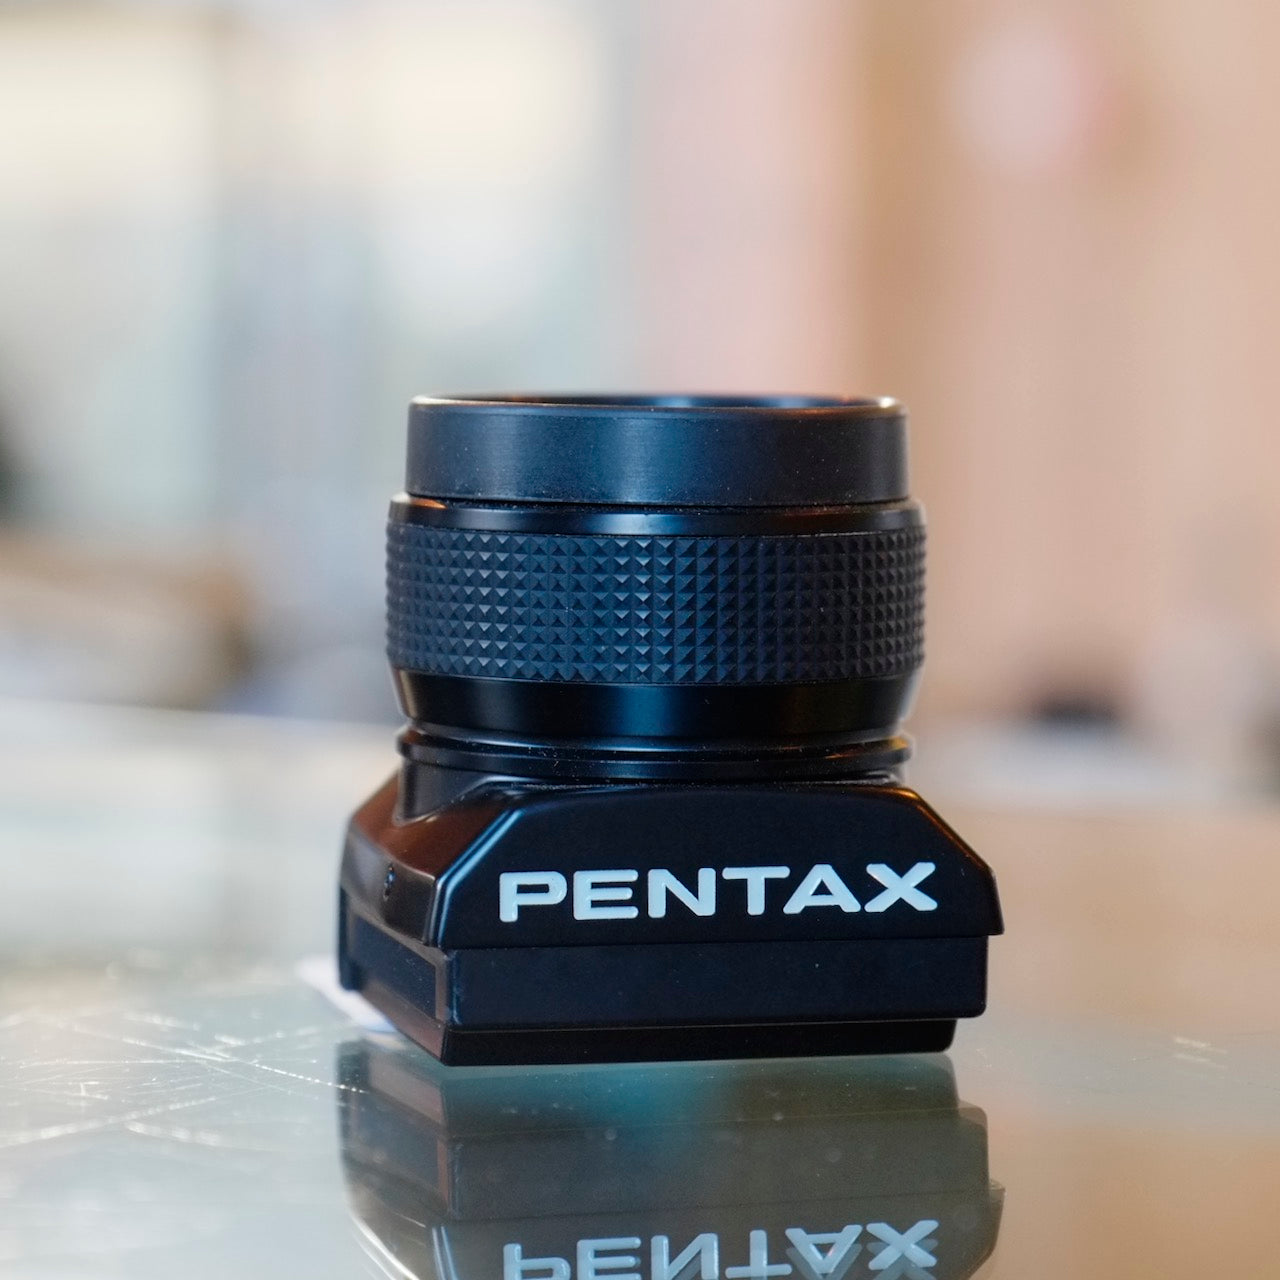 Pentax FE-1